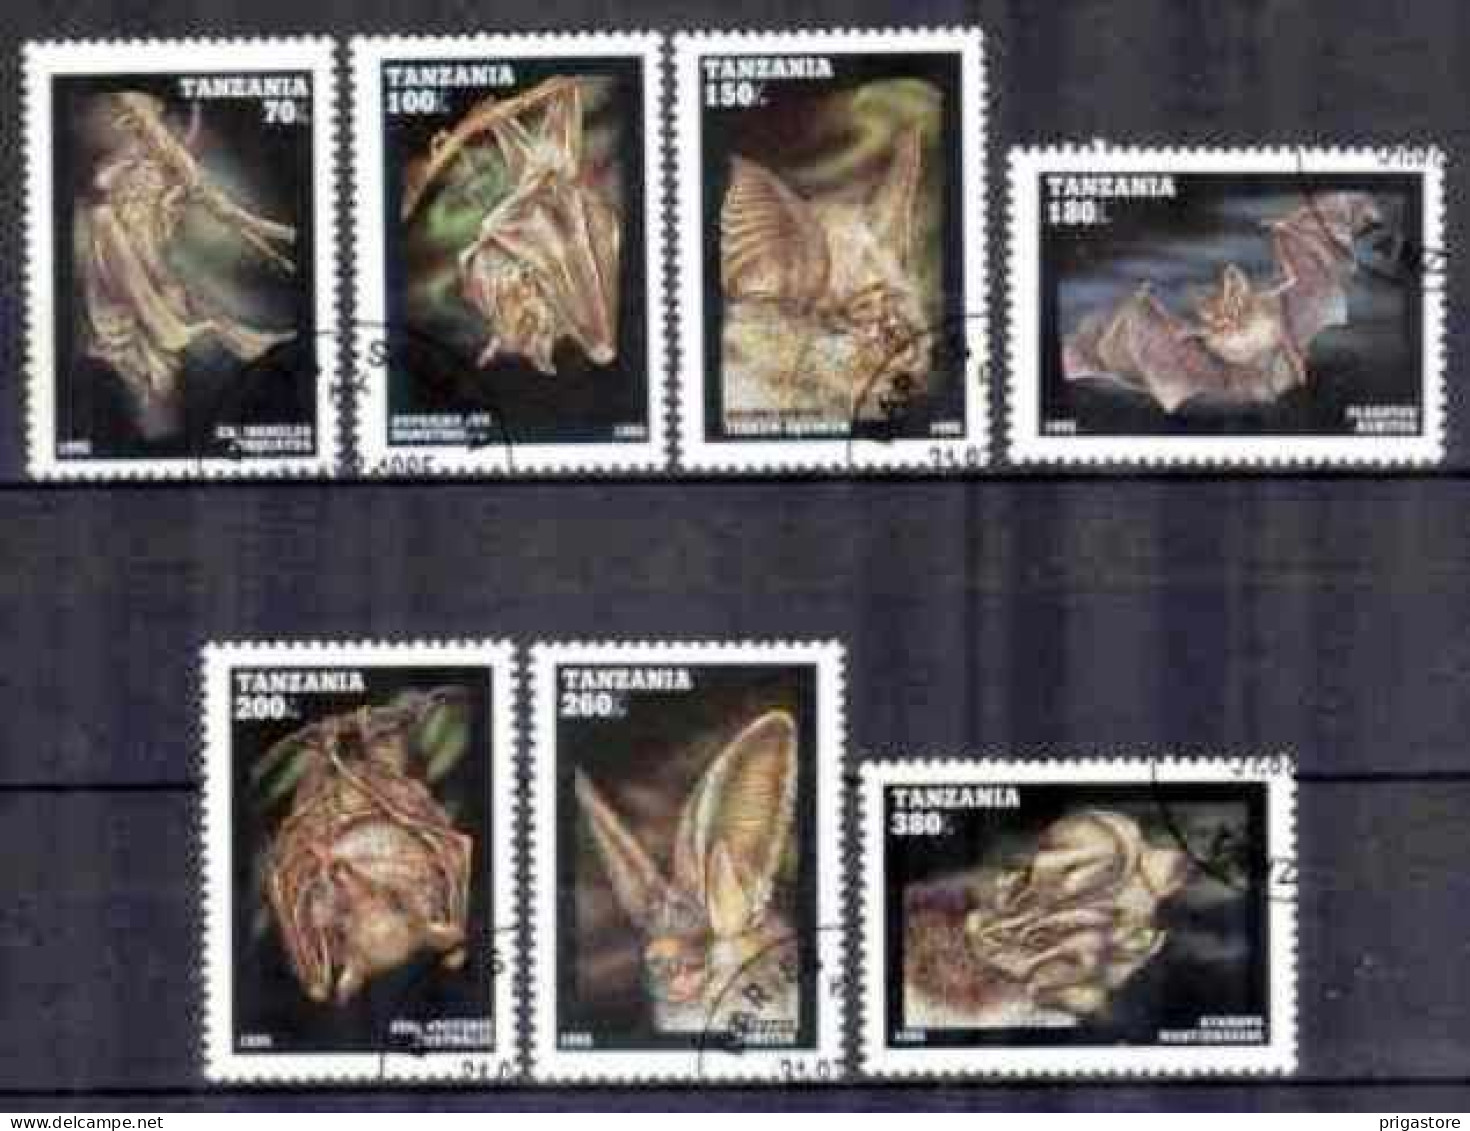 Animaux Chauve-Souris Tanzanie 1995 (17) Yvert N° 1845 à 1851 Oblitéré Used - Fledermäuse